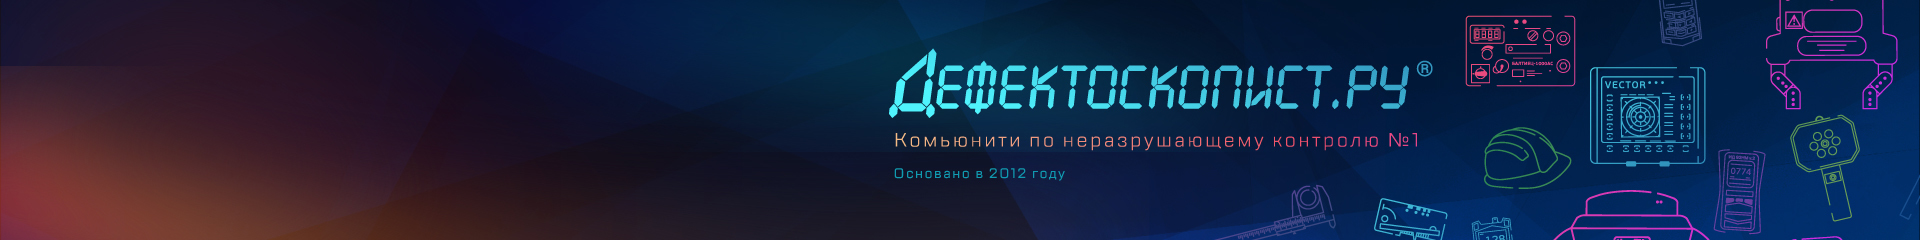 creator cover Дефектоскопист.ру